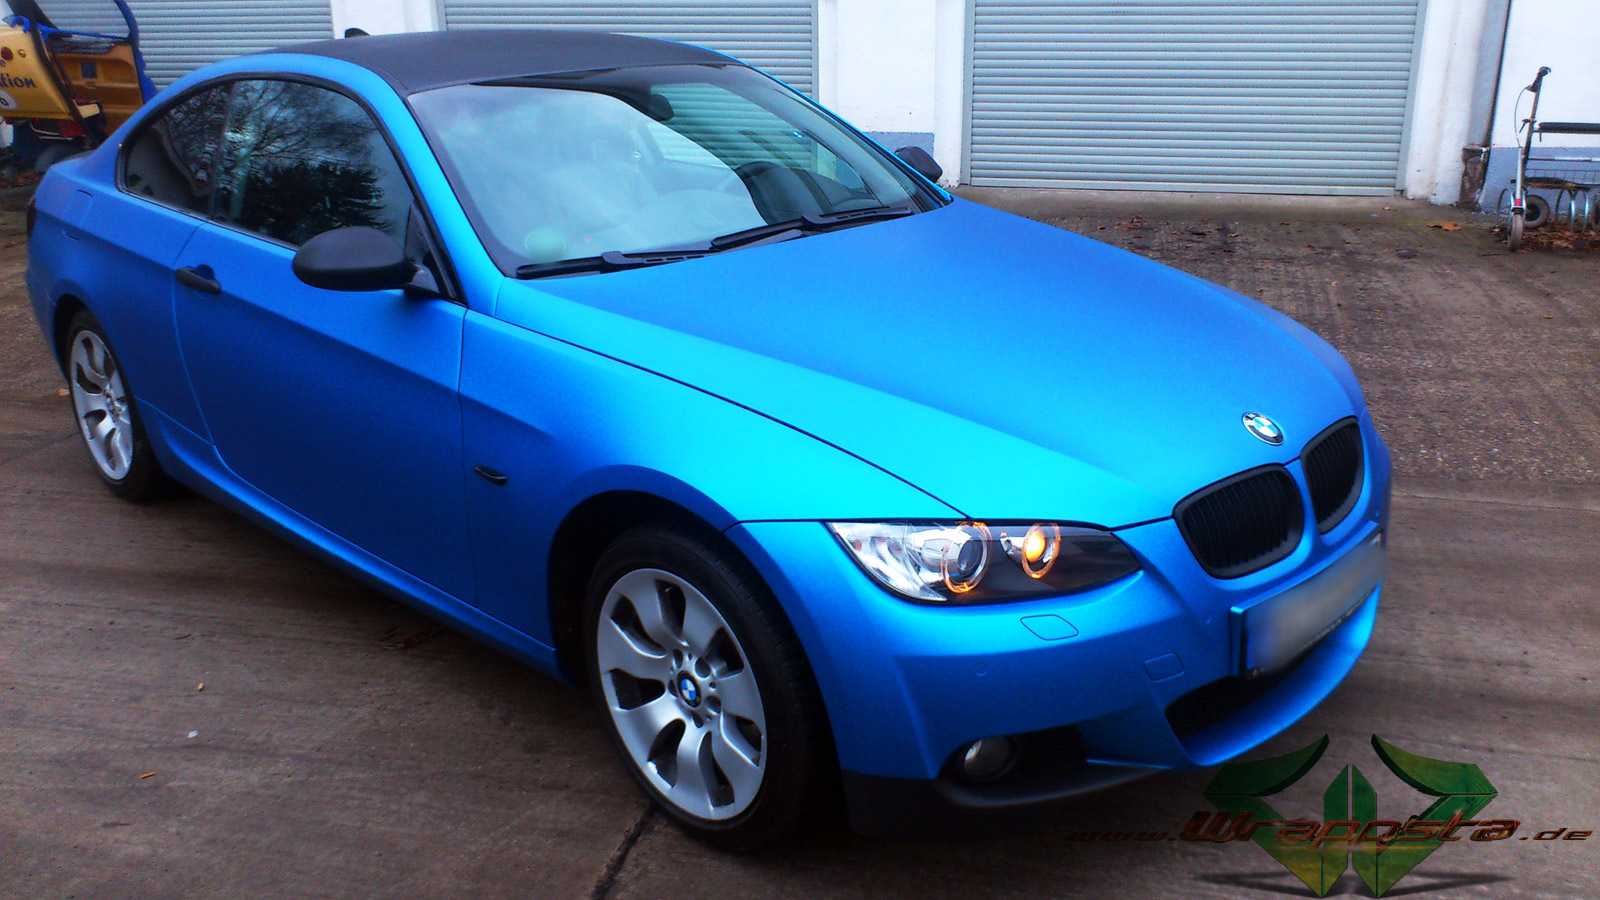 Meet blue. БМВ 3 е90 цвет синий металлик. BMW 3 синий перламутр. БМВ 3 синяя матовая. Синий перламутр БМВ а89.